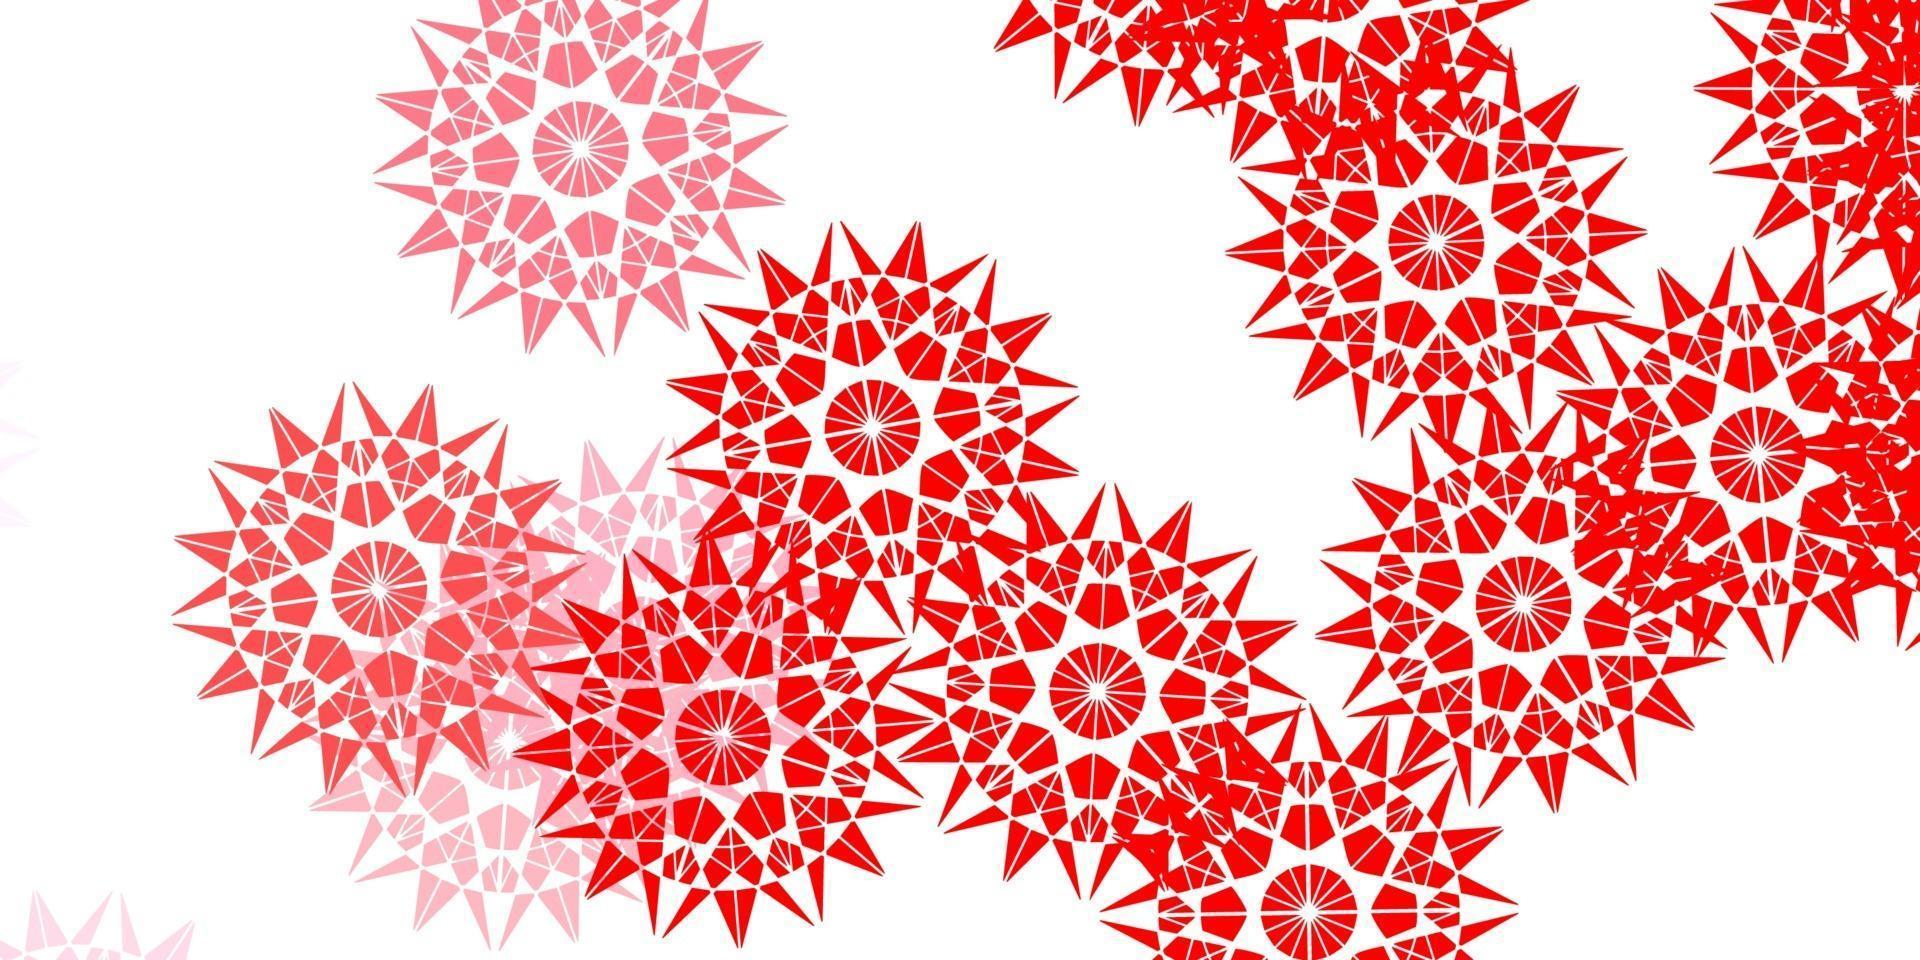 fond de doodle vecteur rouge clair avec des fleurs.